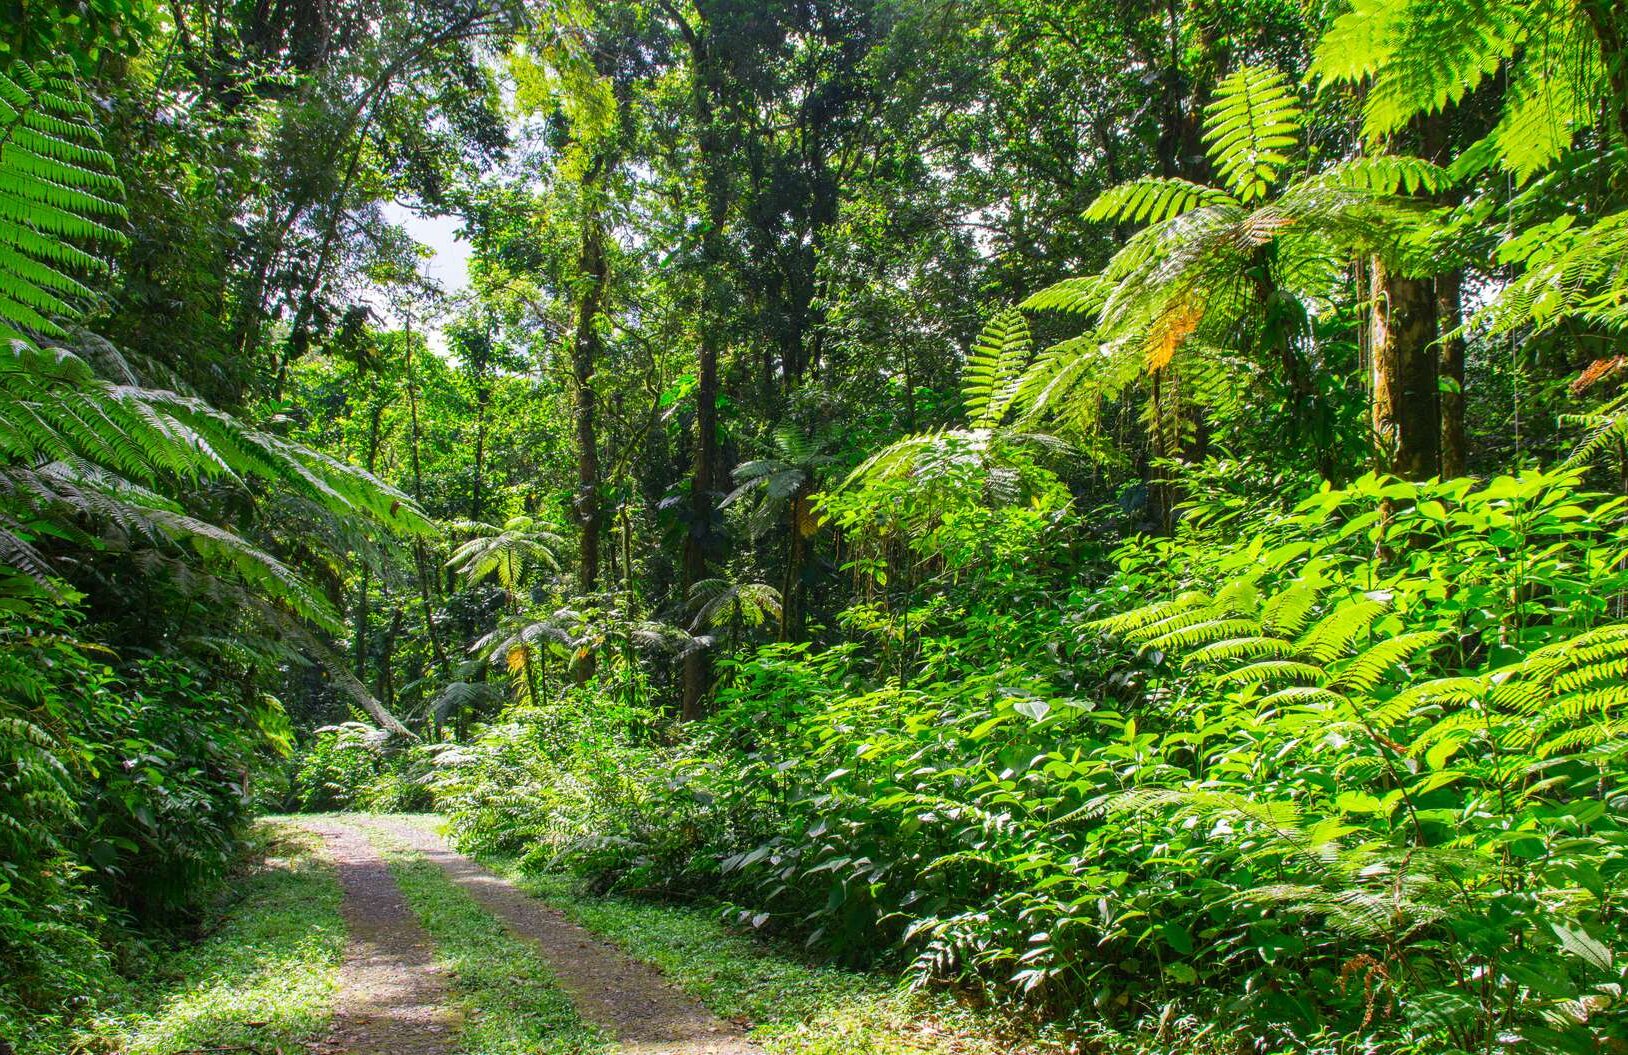 parc national guadeloupe e1613755661552 - Parc National de la Guadeloupe-France